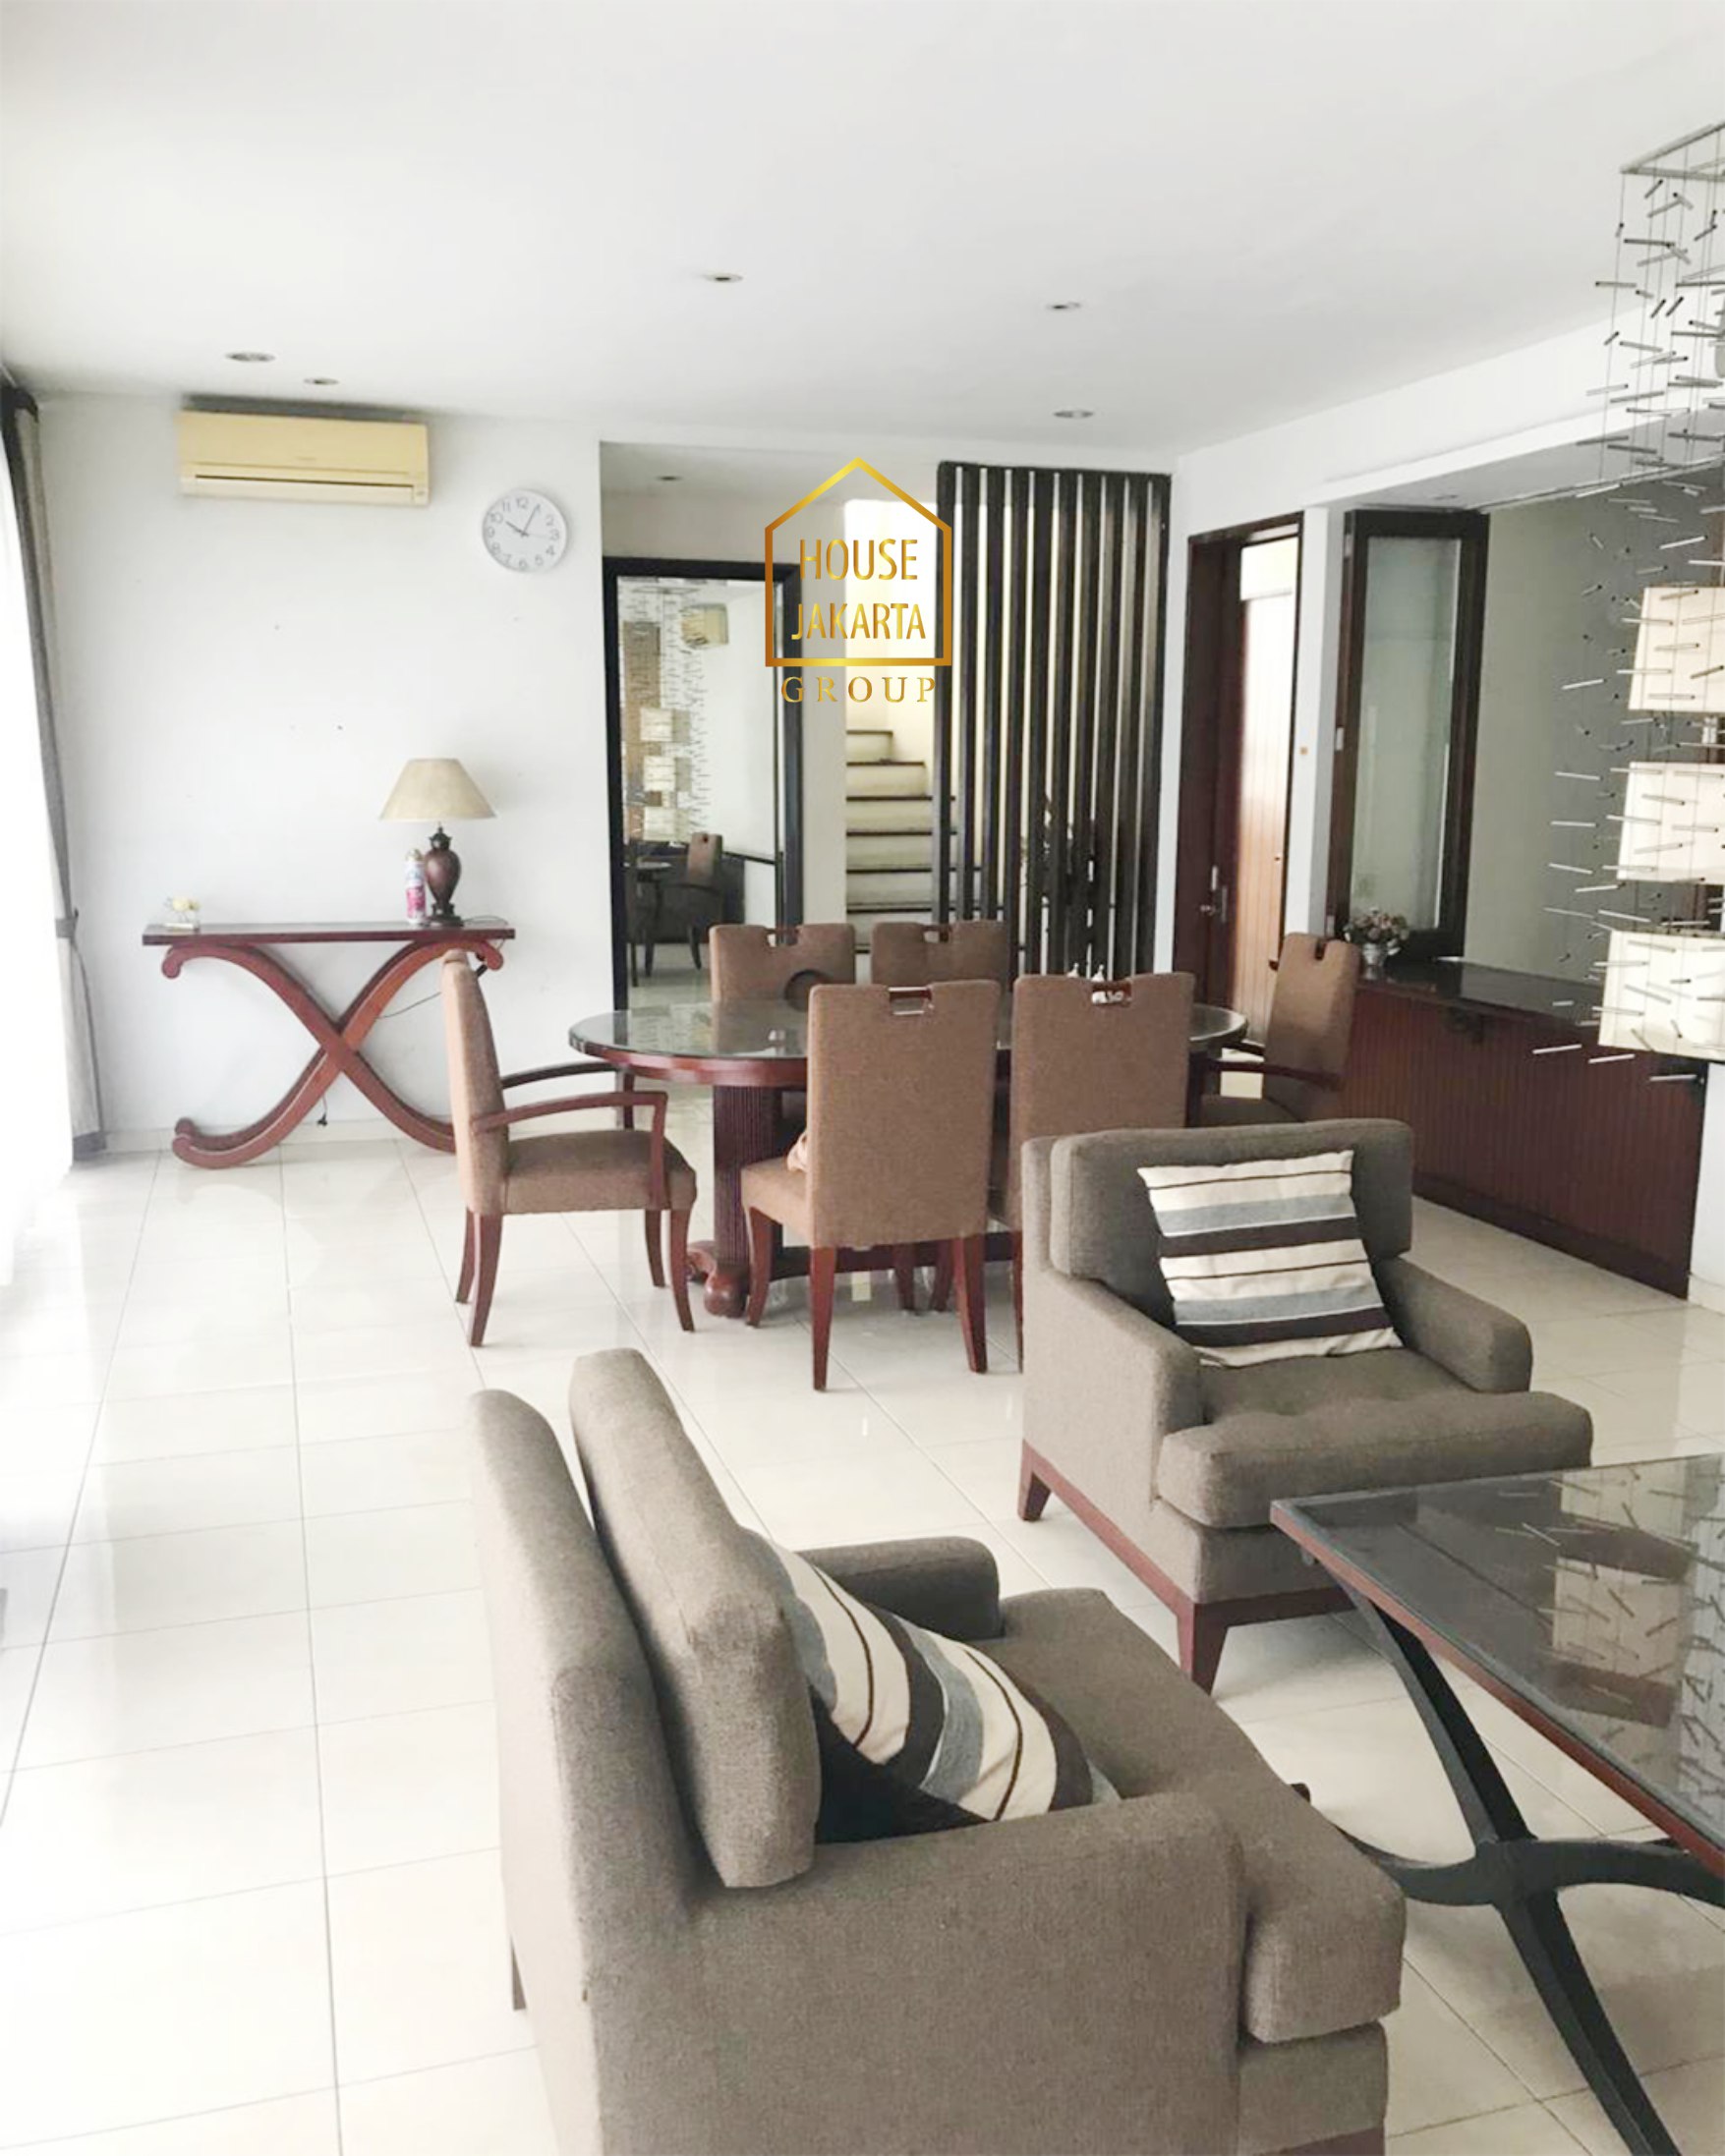  For Rent: Mansion 2 Lantai Pinang Ranti - Jaktim Di Lokasi Strategis Fully Furnished, Ada Private Pool.